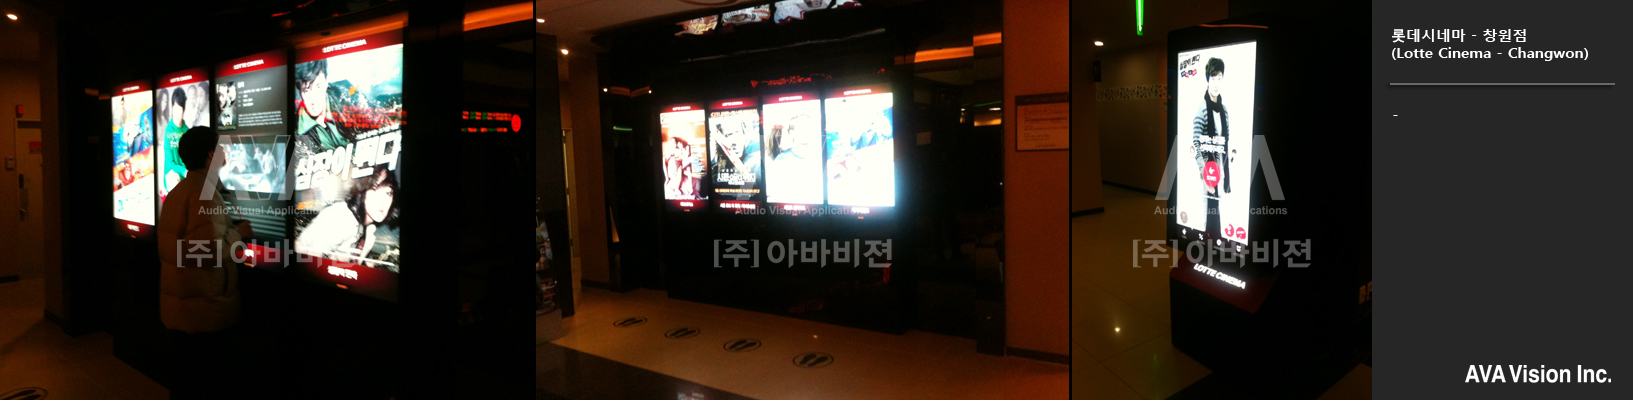 Lotte Cinema Changwon